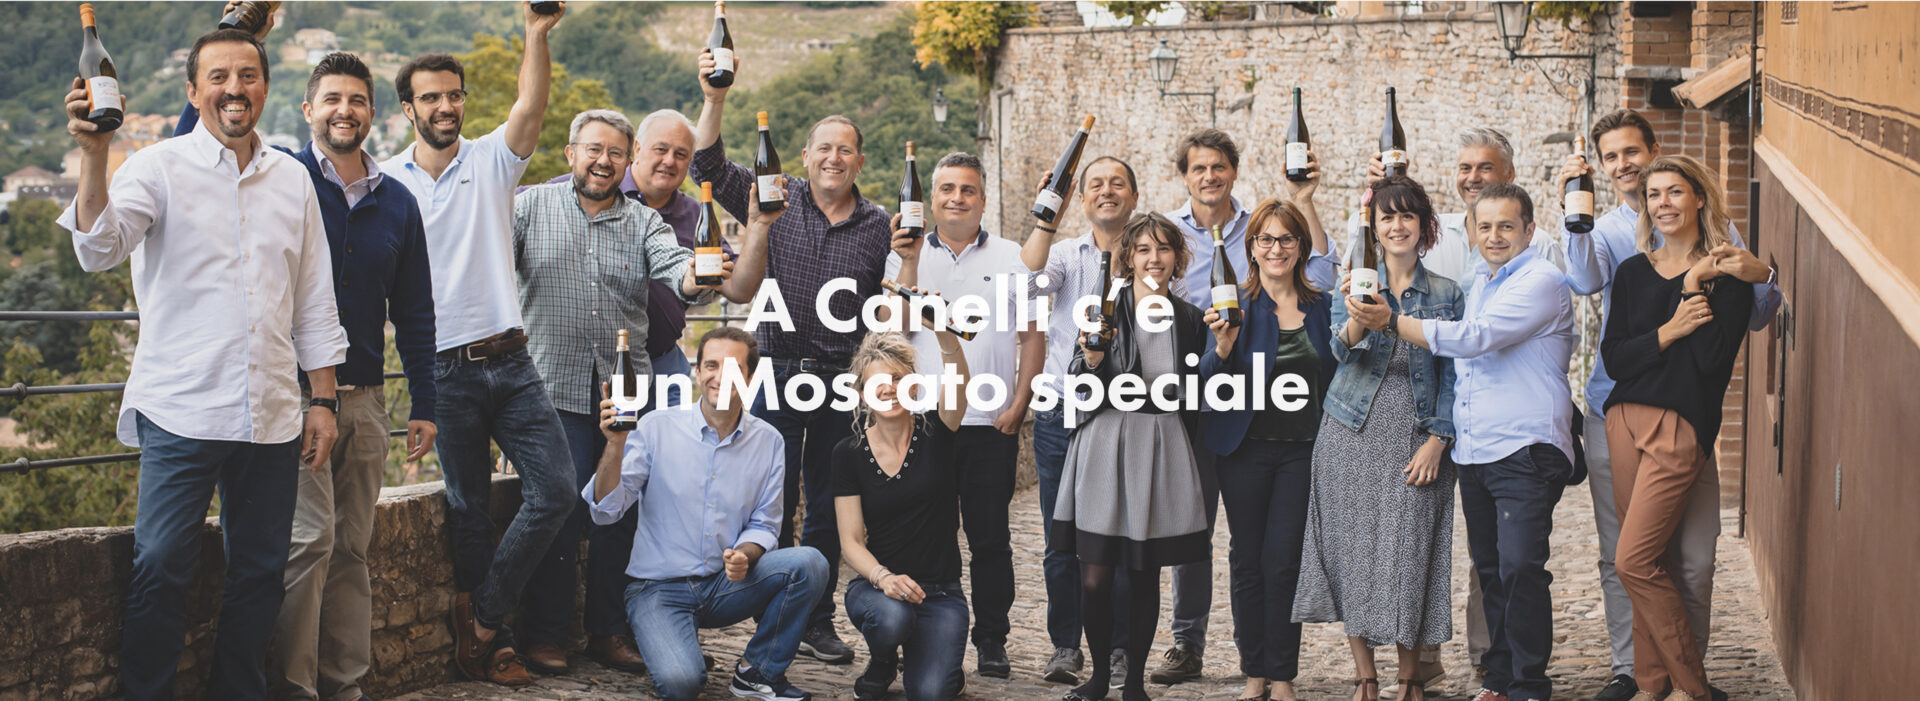 Wijnbouwers Moscato Canello